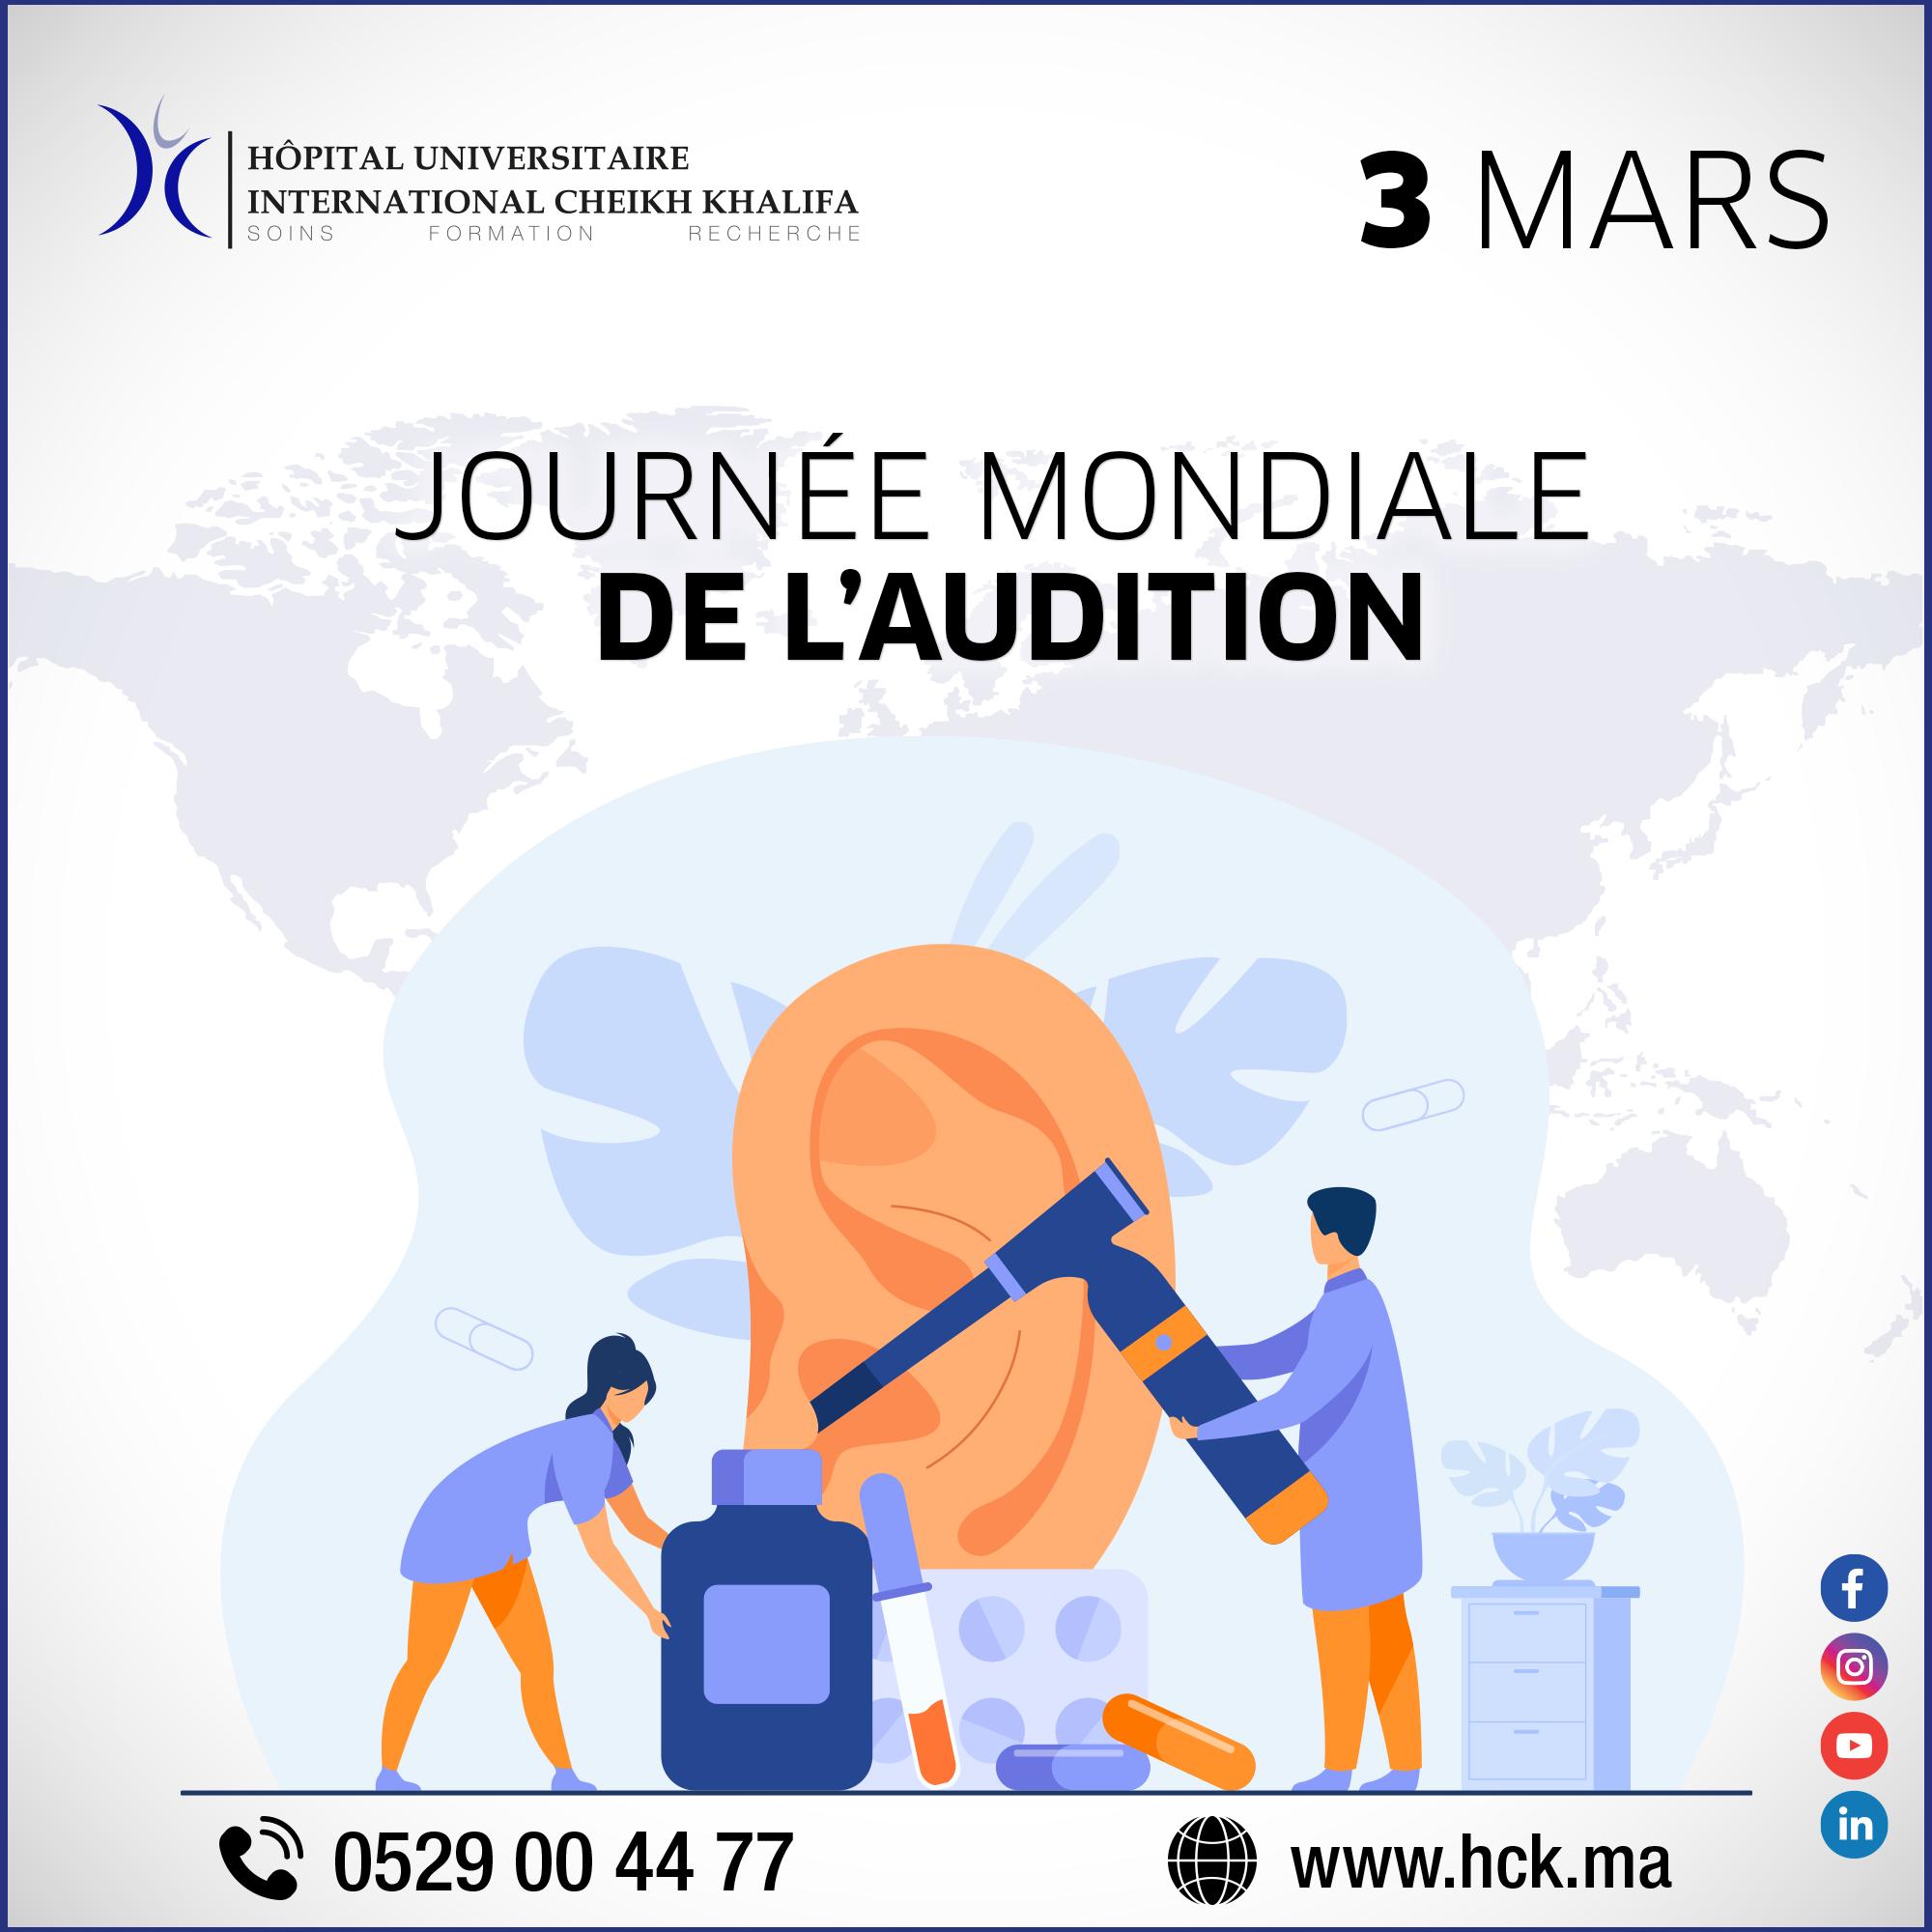 03 MARS : JOURNÉE MONDIALE DE L'AUDITION